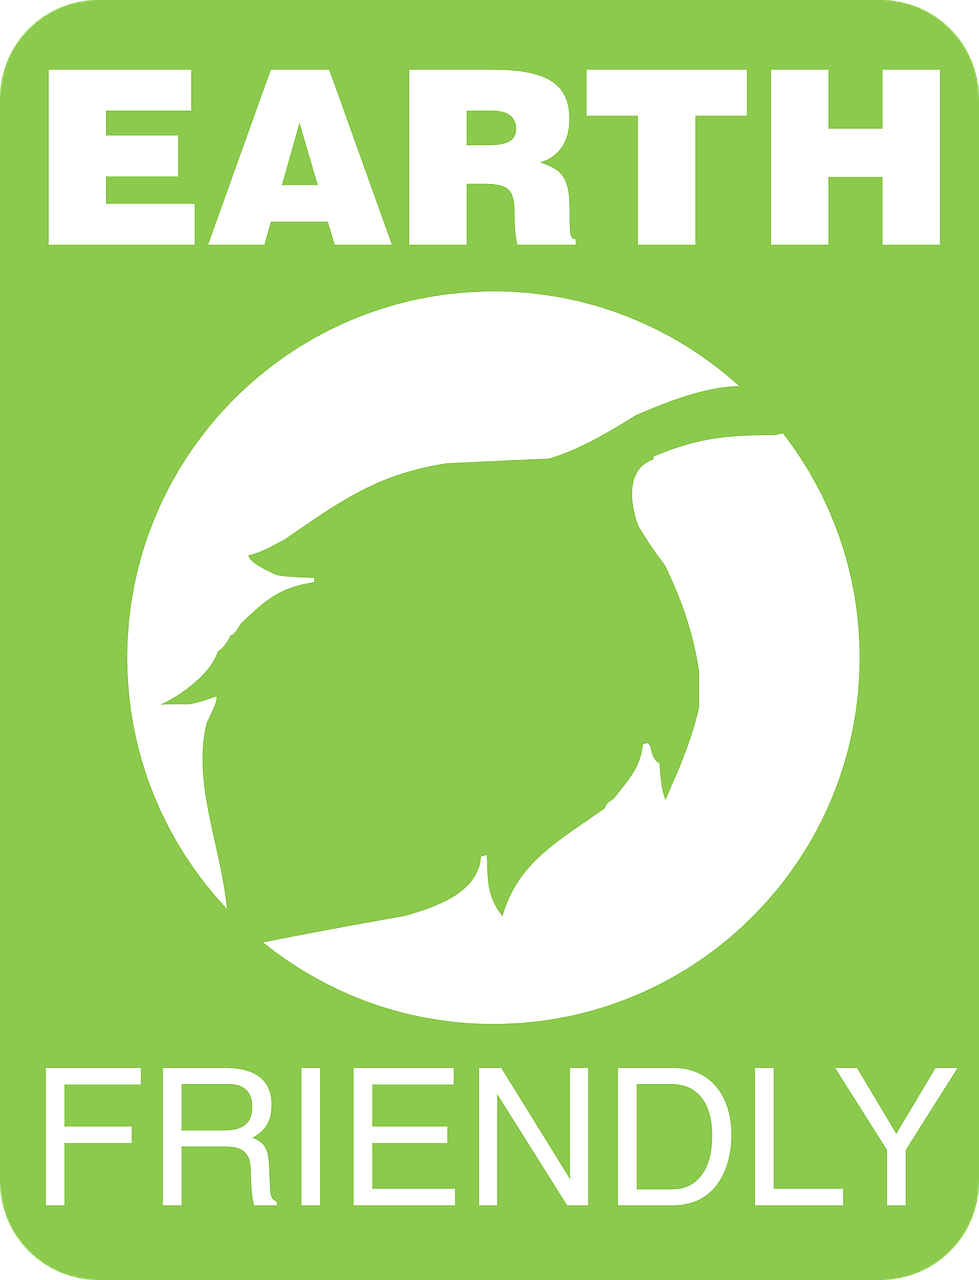 earth friendly